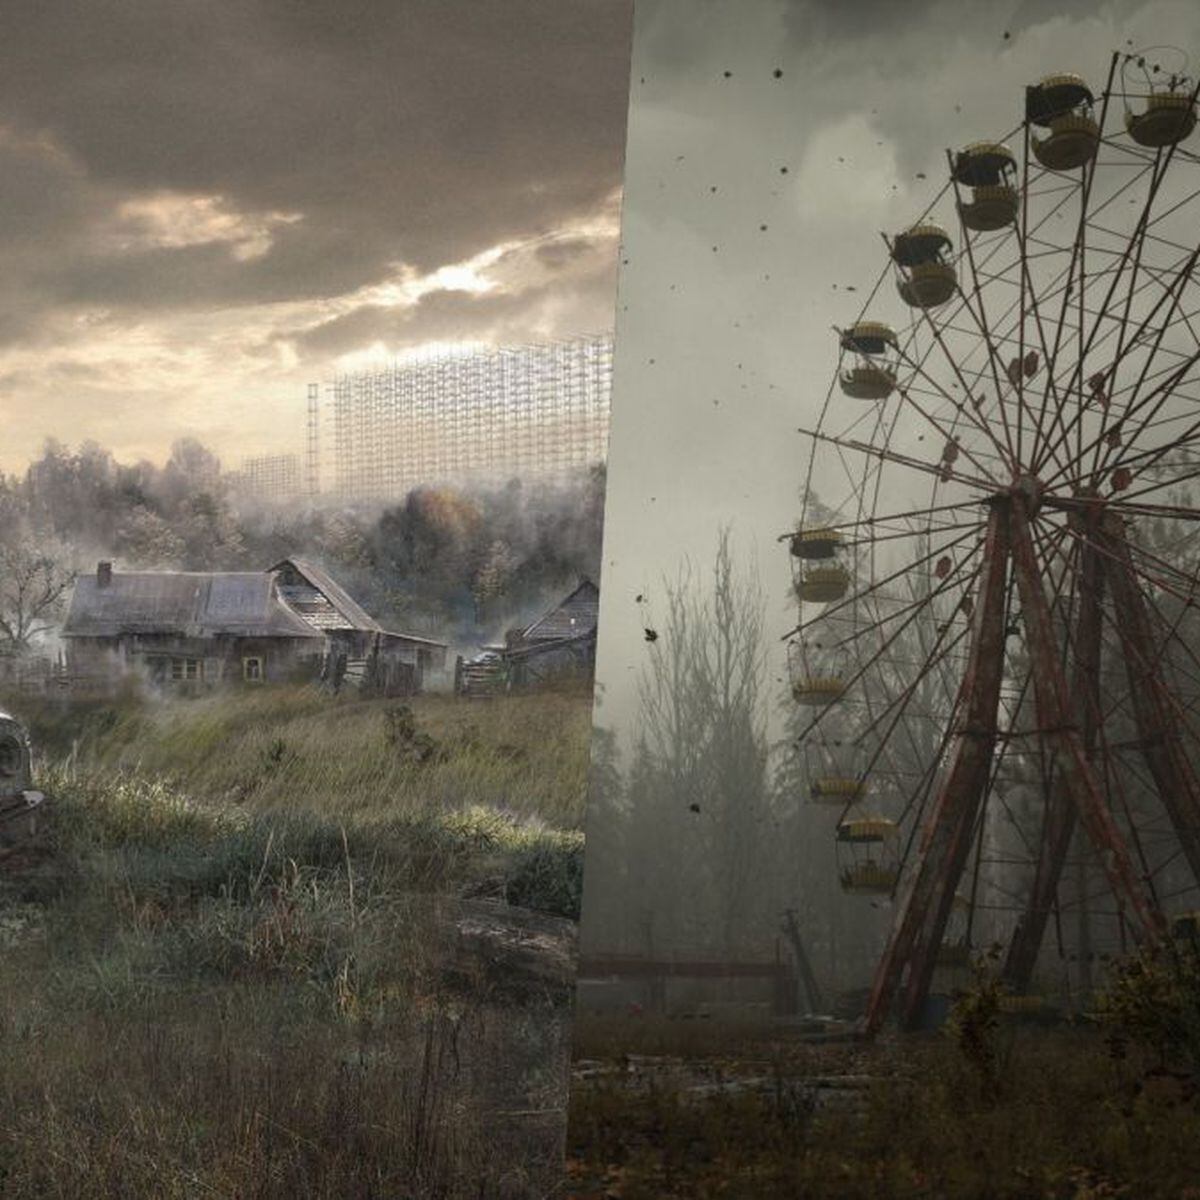 STALKER 2 já pode pré-baixado no Xbox Series XS; o coração de Chernobyl  ocupara muito espaço - Windows Club